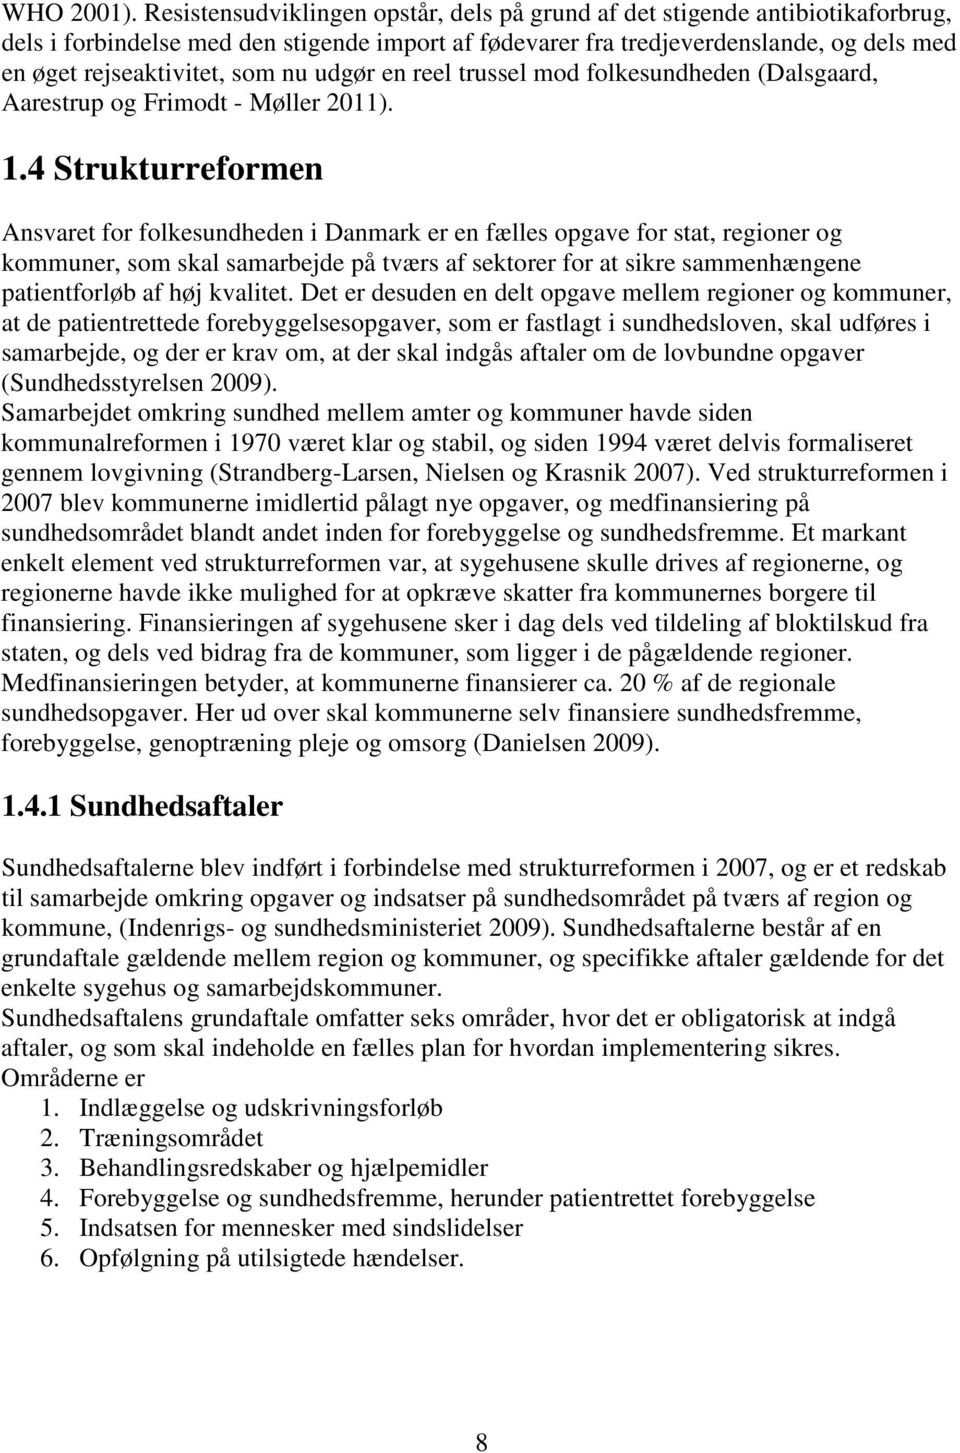 nu udgør en reel trussel mod folkesundheden (Dalsgaard, Aarestrup og Frimodt - Møller 2011). 1.